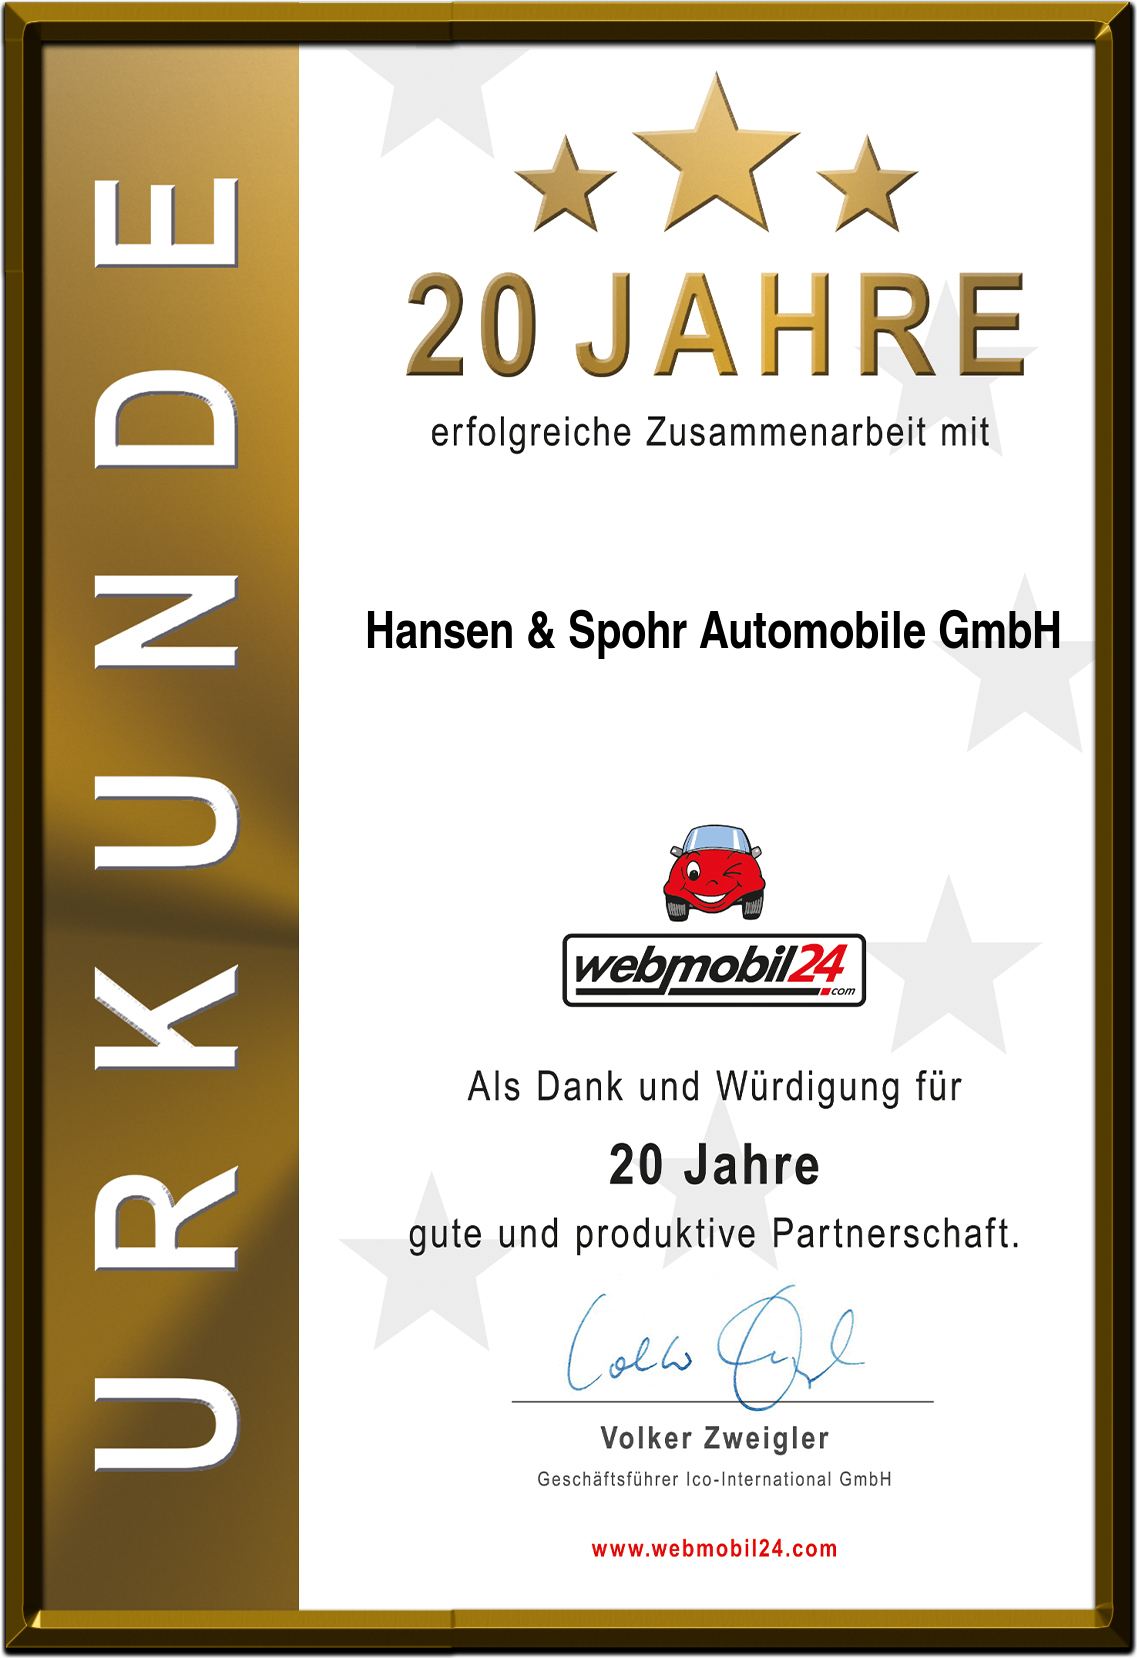 Hansen & Spohr Automobile GmbH